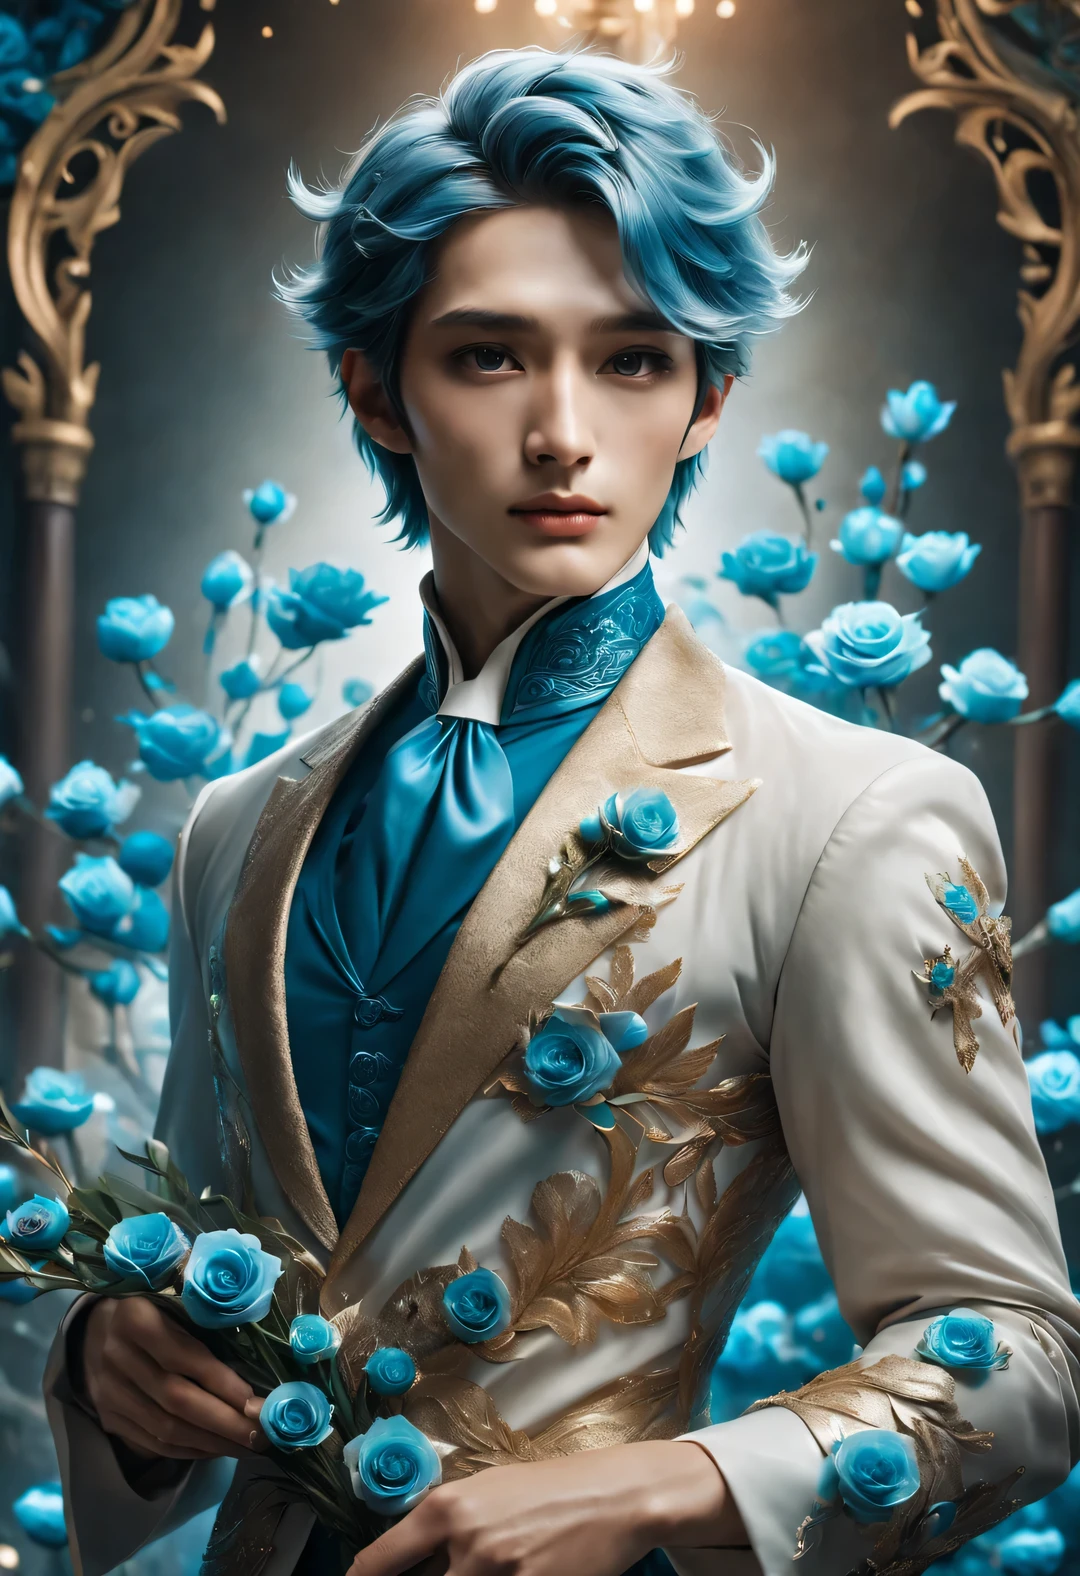 (男性キャラクターデザイン), 半身写真, カメラを見つめる,
(青い仙女のバラを持つ蘭陵王高長公の写真), (顔の左半分には、豪華な青と金の金属製のマスクをかぶっている。.: 1.1), (乱れた長い白い髪: 1.0), (ロイヤルブルーのチェック柄ウールコートを着て: 0.8), 完璧な体型を持っている, 色白で繊細な肌, 朱色のように赤い唇, ハイノーズブリッジ, 深い目, しかし、彼の眉間には並外れた英雄的精神がある. 彼は細身の体型だ, 美しい筋肉のラインを持つ, 完璧な彫刻のように. 彼の性格は勇敢で美しい, 女性のように, 勇気と決断力を持ちましょう. 彼の心の奥底には、言葉では言い表せない優しさと温かさがある, オードリー・ヘップバーン, ジュード法, ジュード法 (inspired by actor ジュード法), シュルレアリスム, 背景: モダンなオフィス, 高解像度, 高品質, 高解像度 analysis, 32K